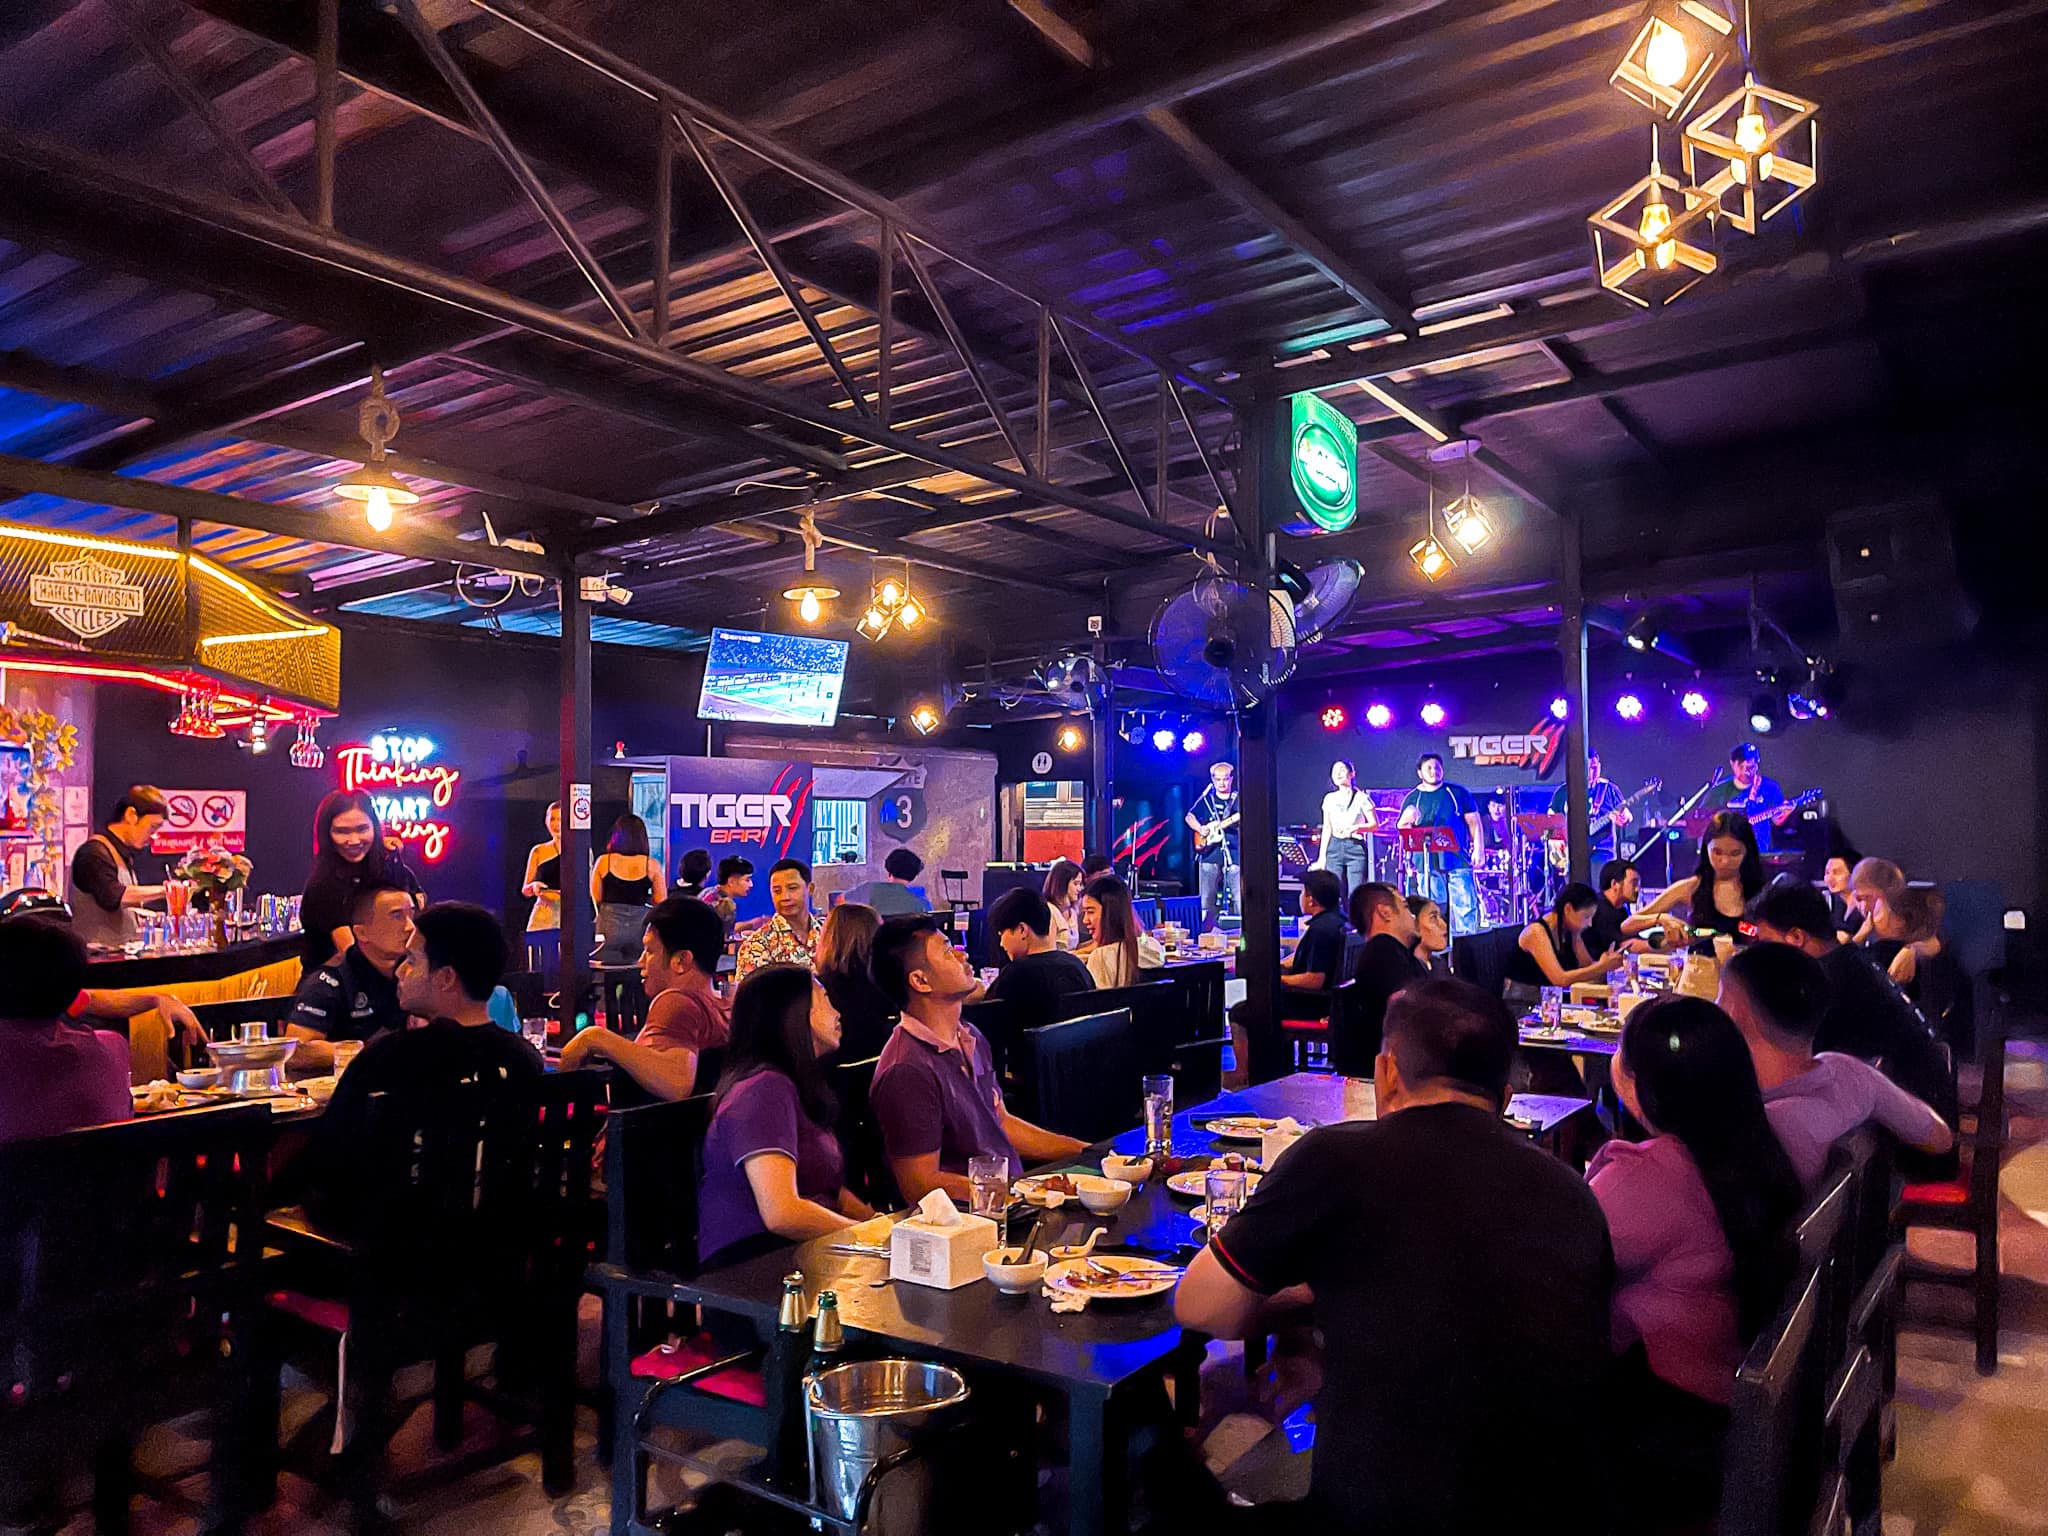 ไทเกอร์ บาร์ Chiangrai (Tiger Bar Chiangrai) : เชียงราย (Chiang Rai)